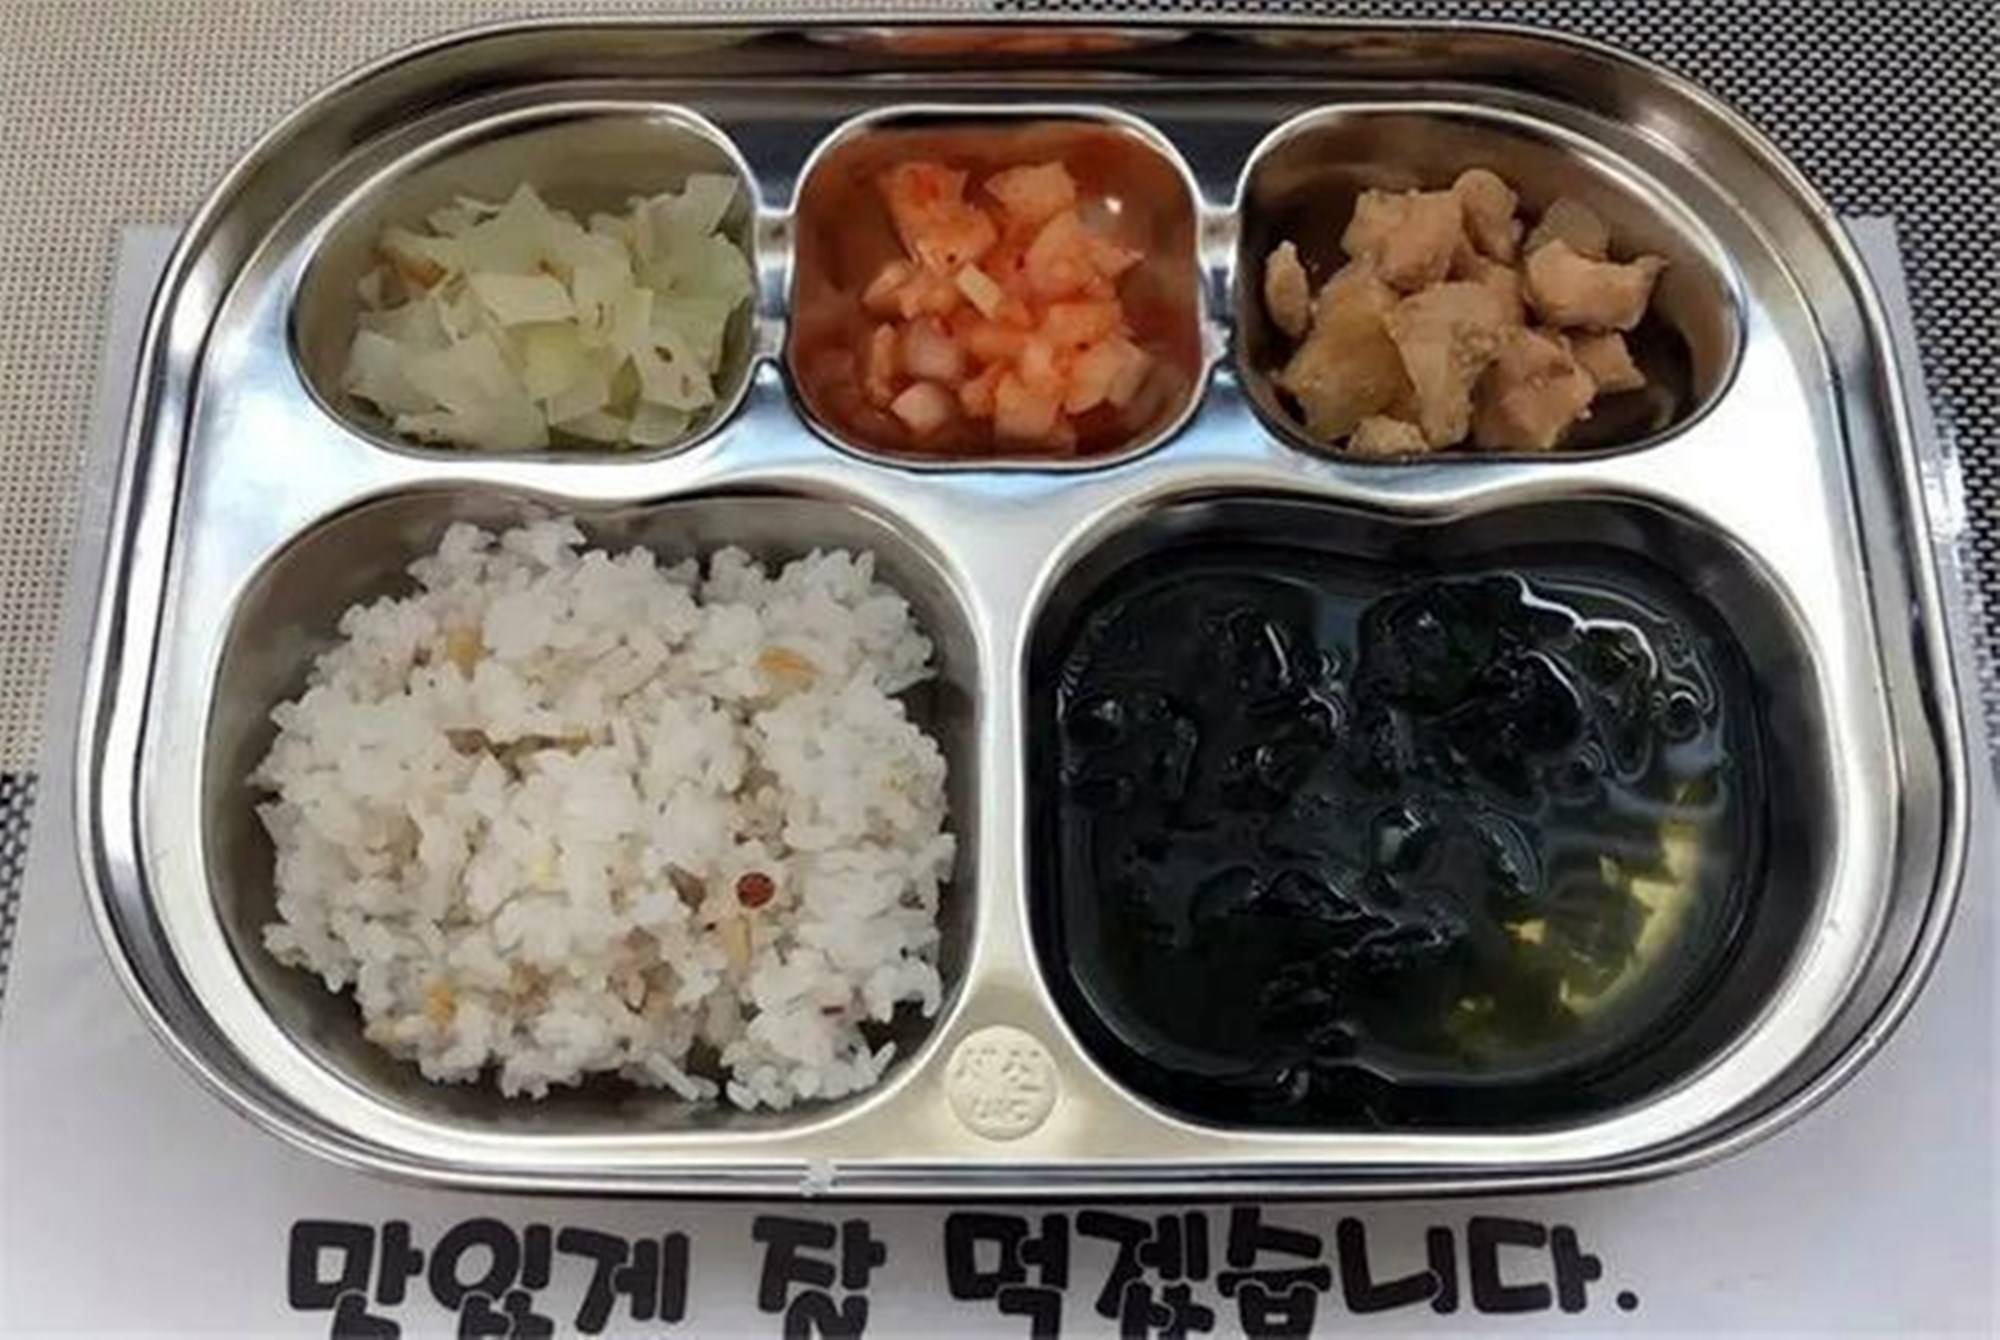 中日韩幼儿园的伙食对比出炉,韩国传统,日本科学,中国